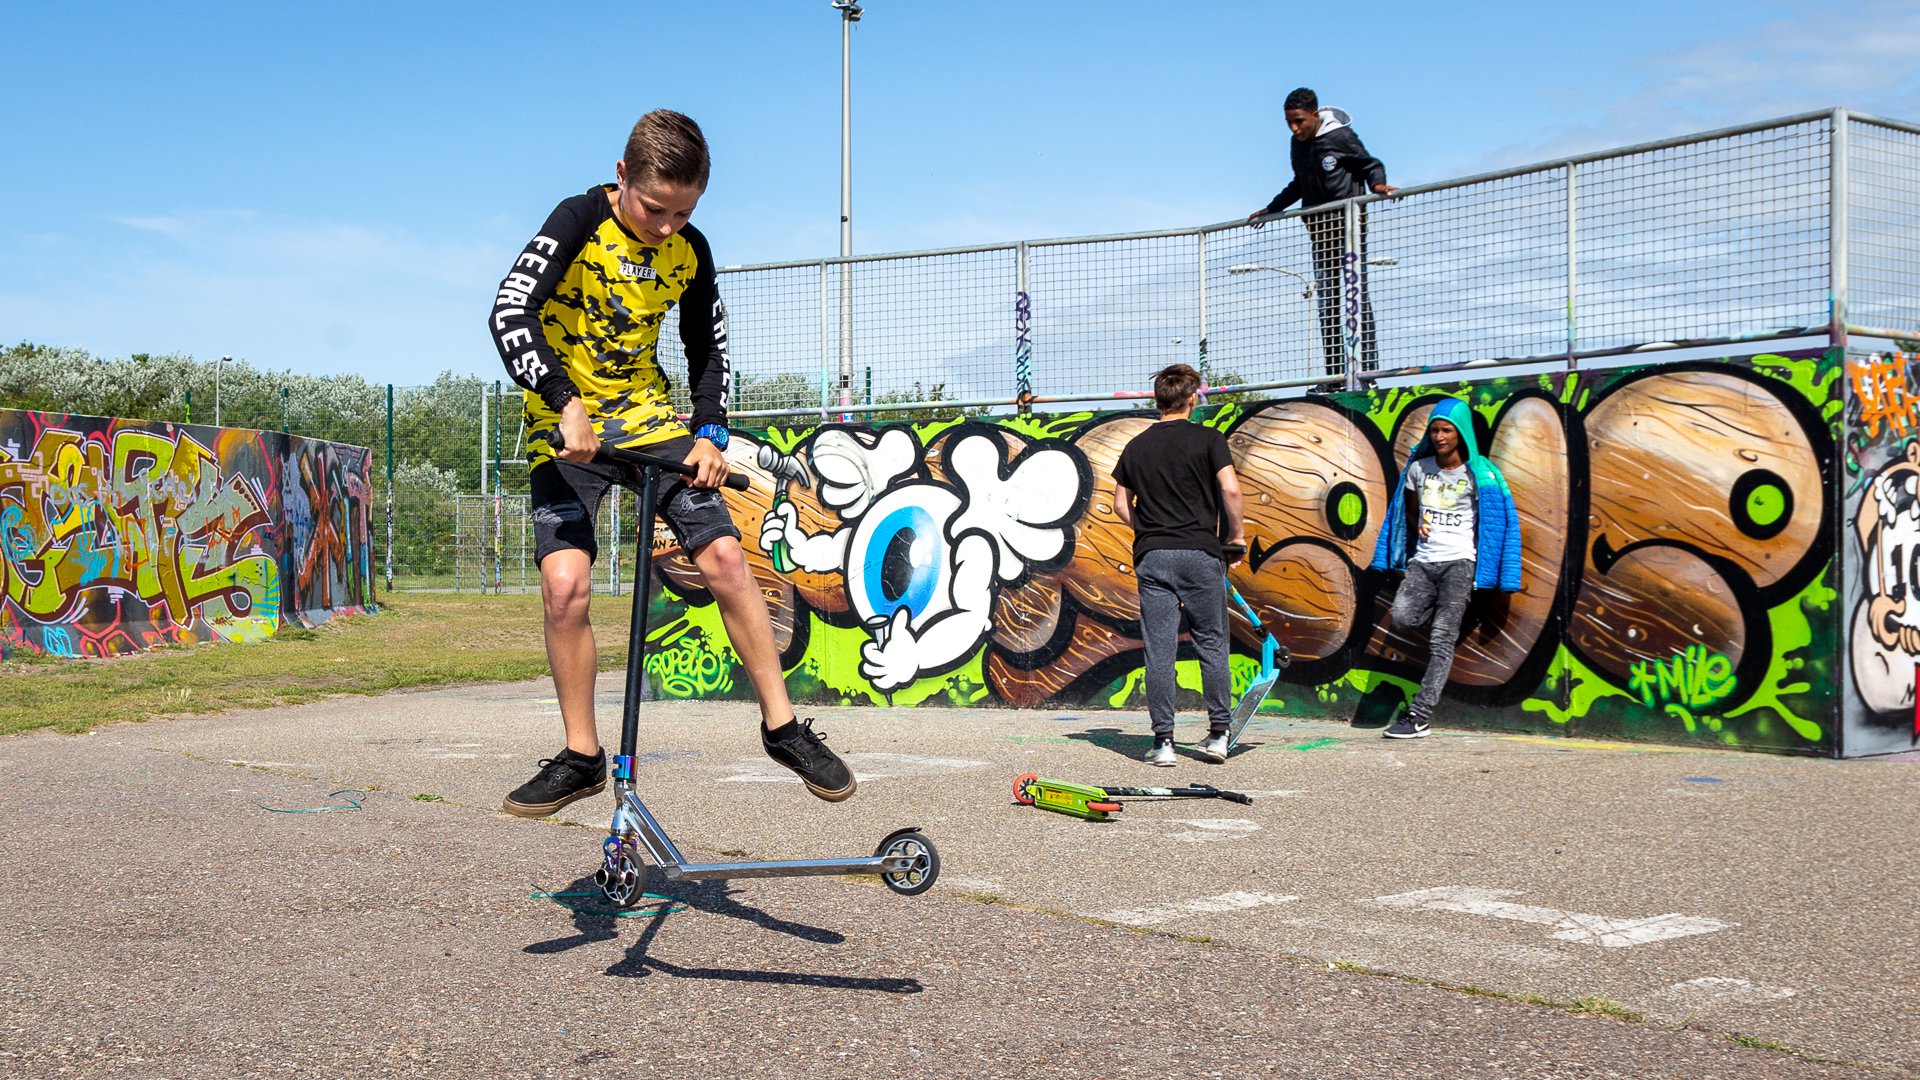 jongeren op skatebaan spelen met step en skateboard